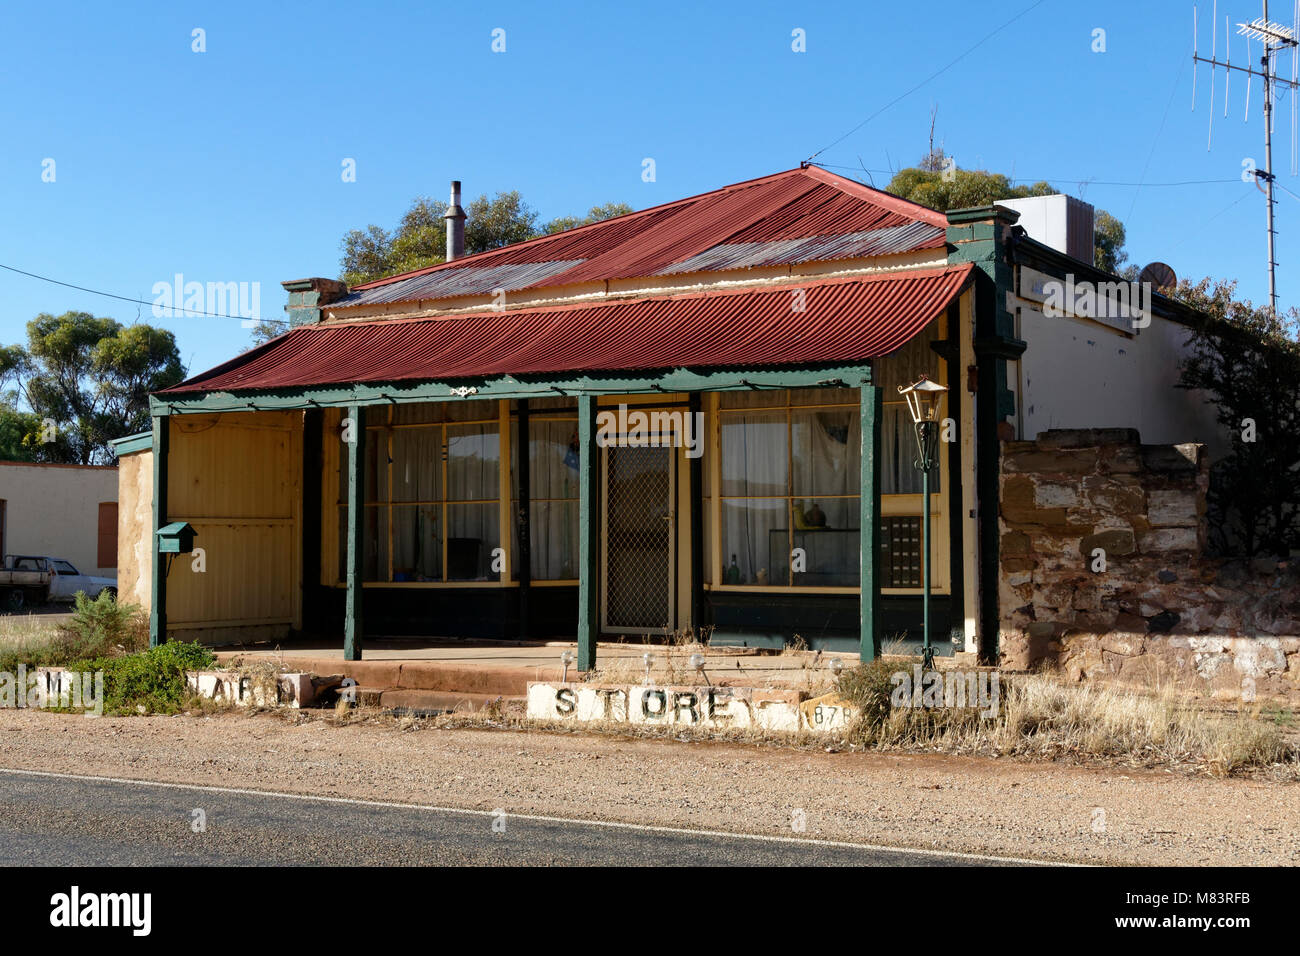 Australian country store avec toit recouvert de fer rouge, Morchard, Australie du Sud. Banque D'Images